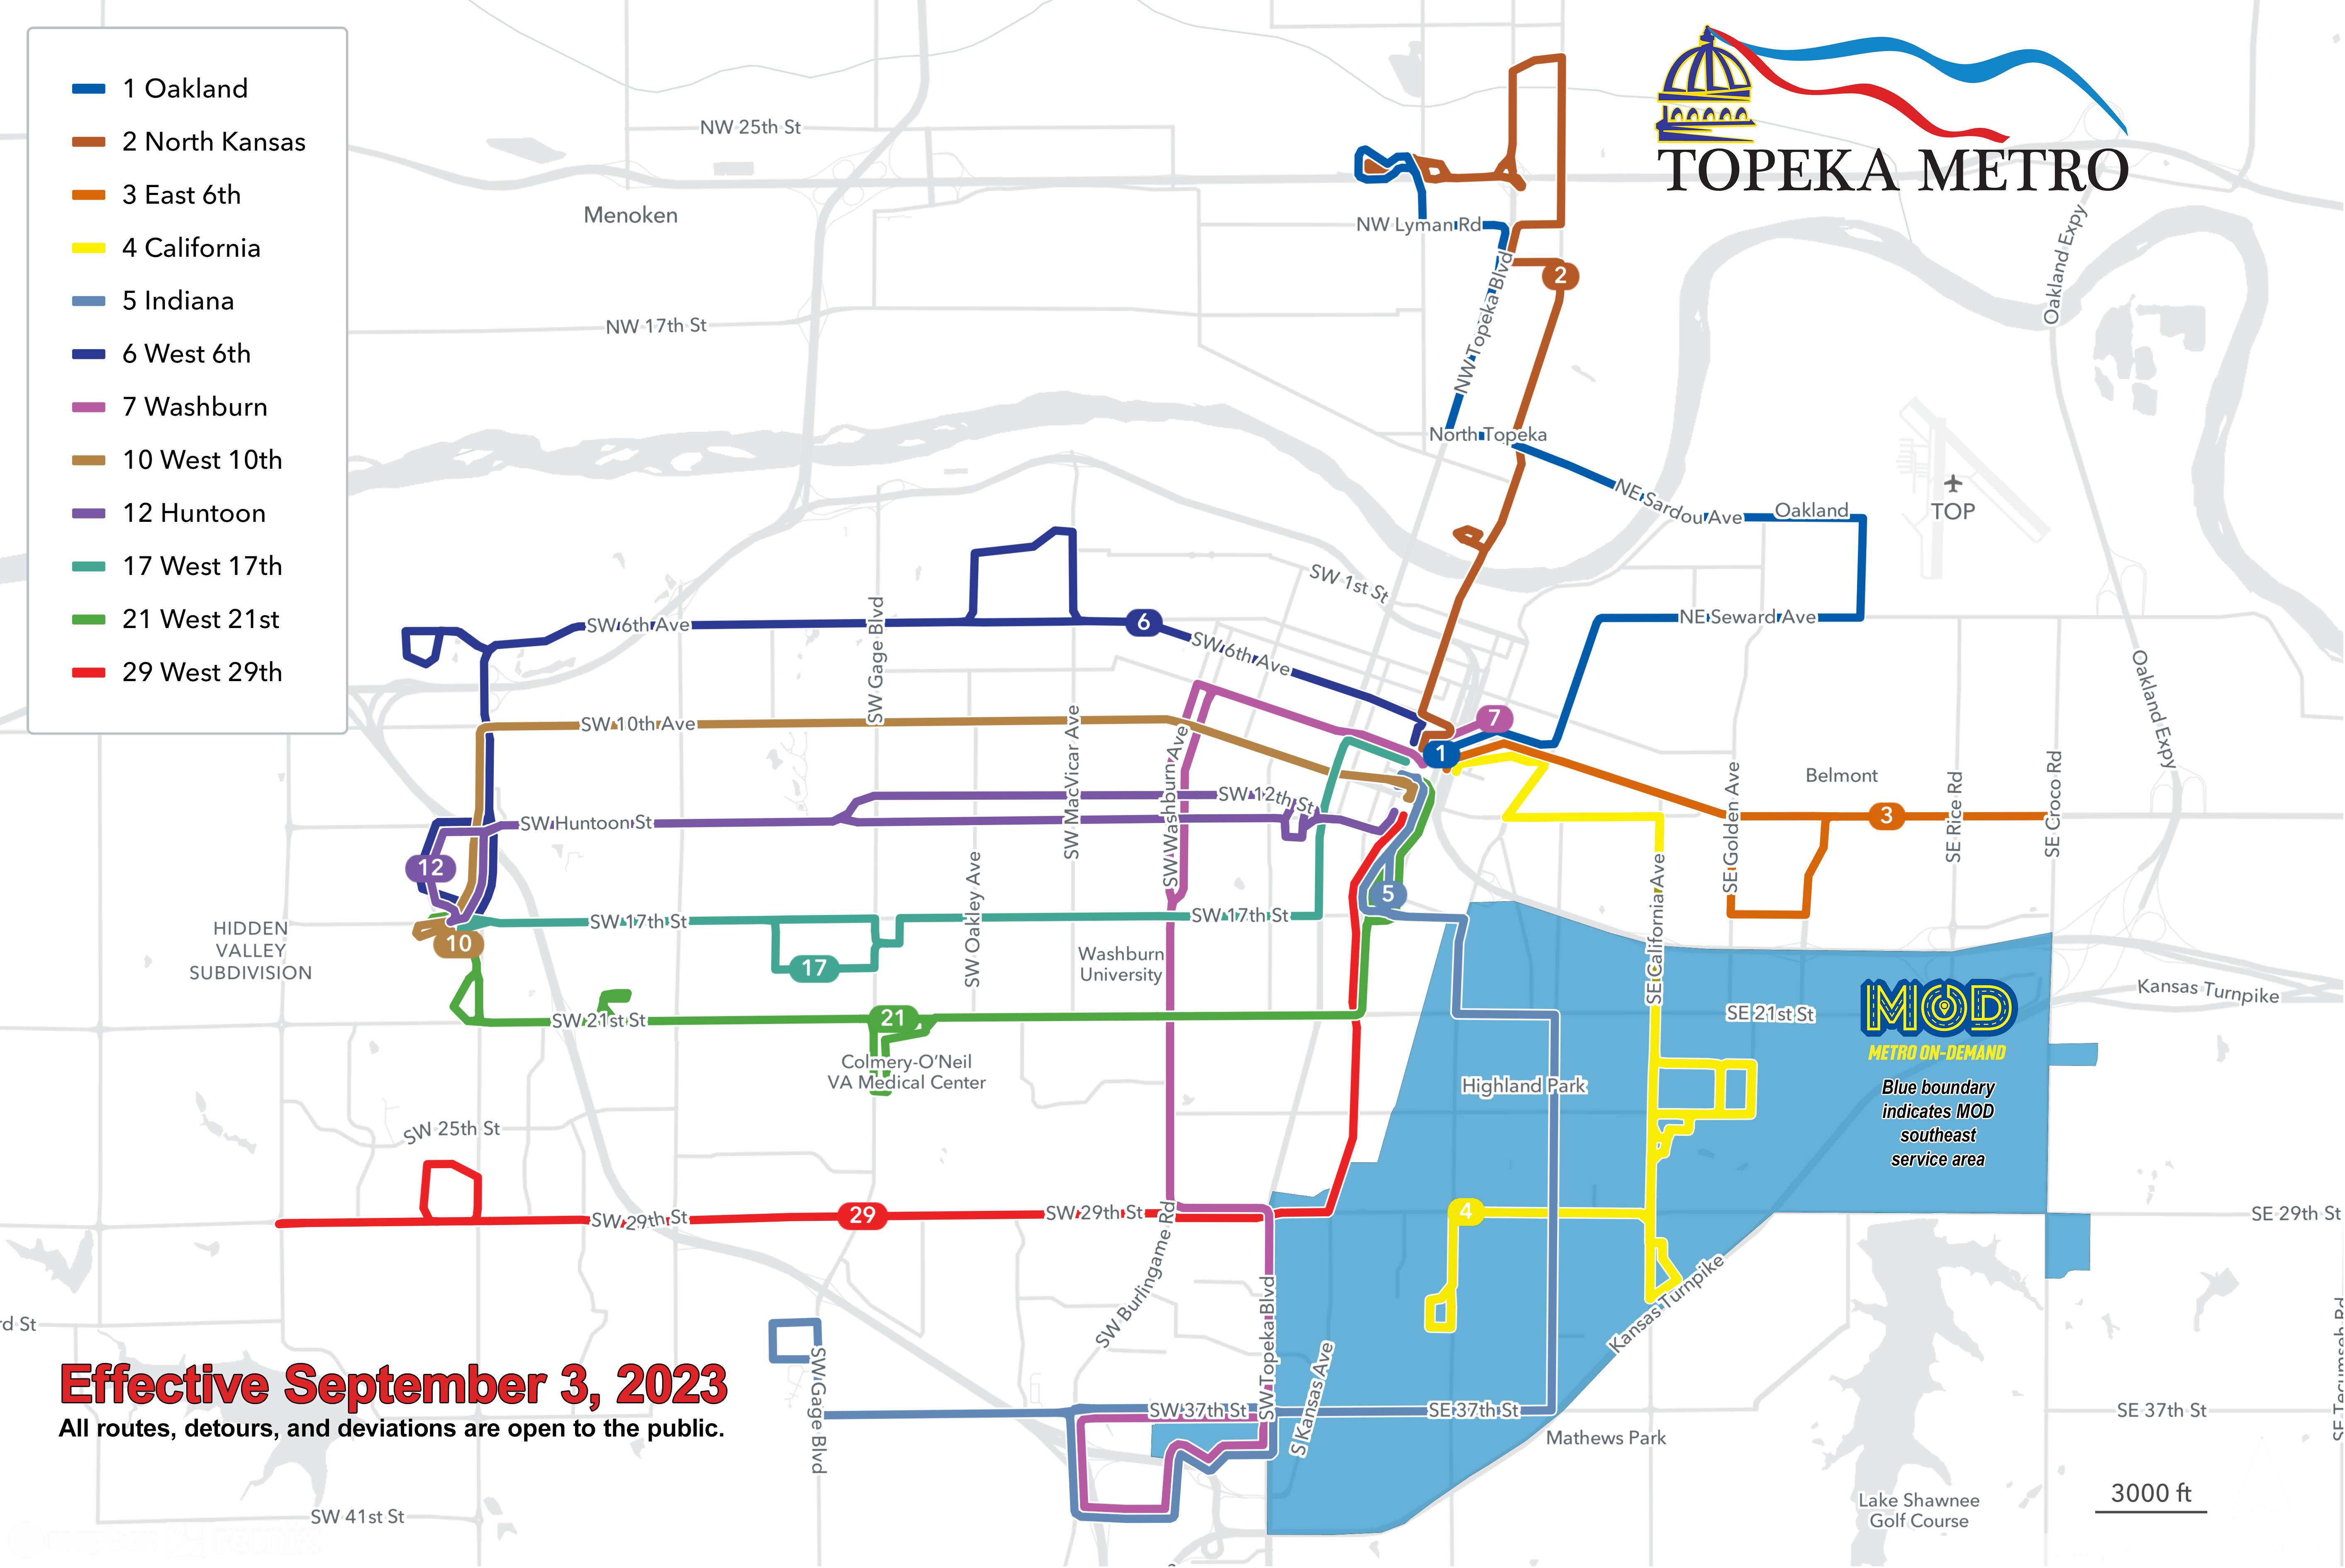 September 2023 Topeka Metro System Map